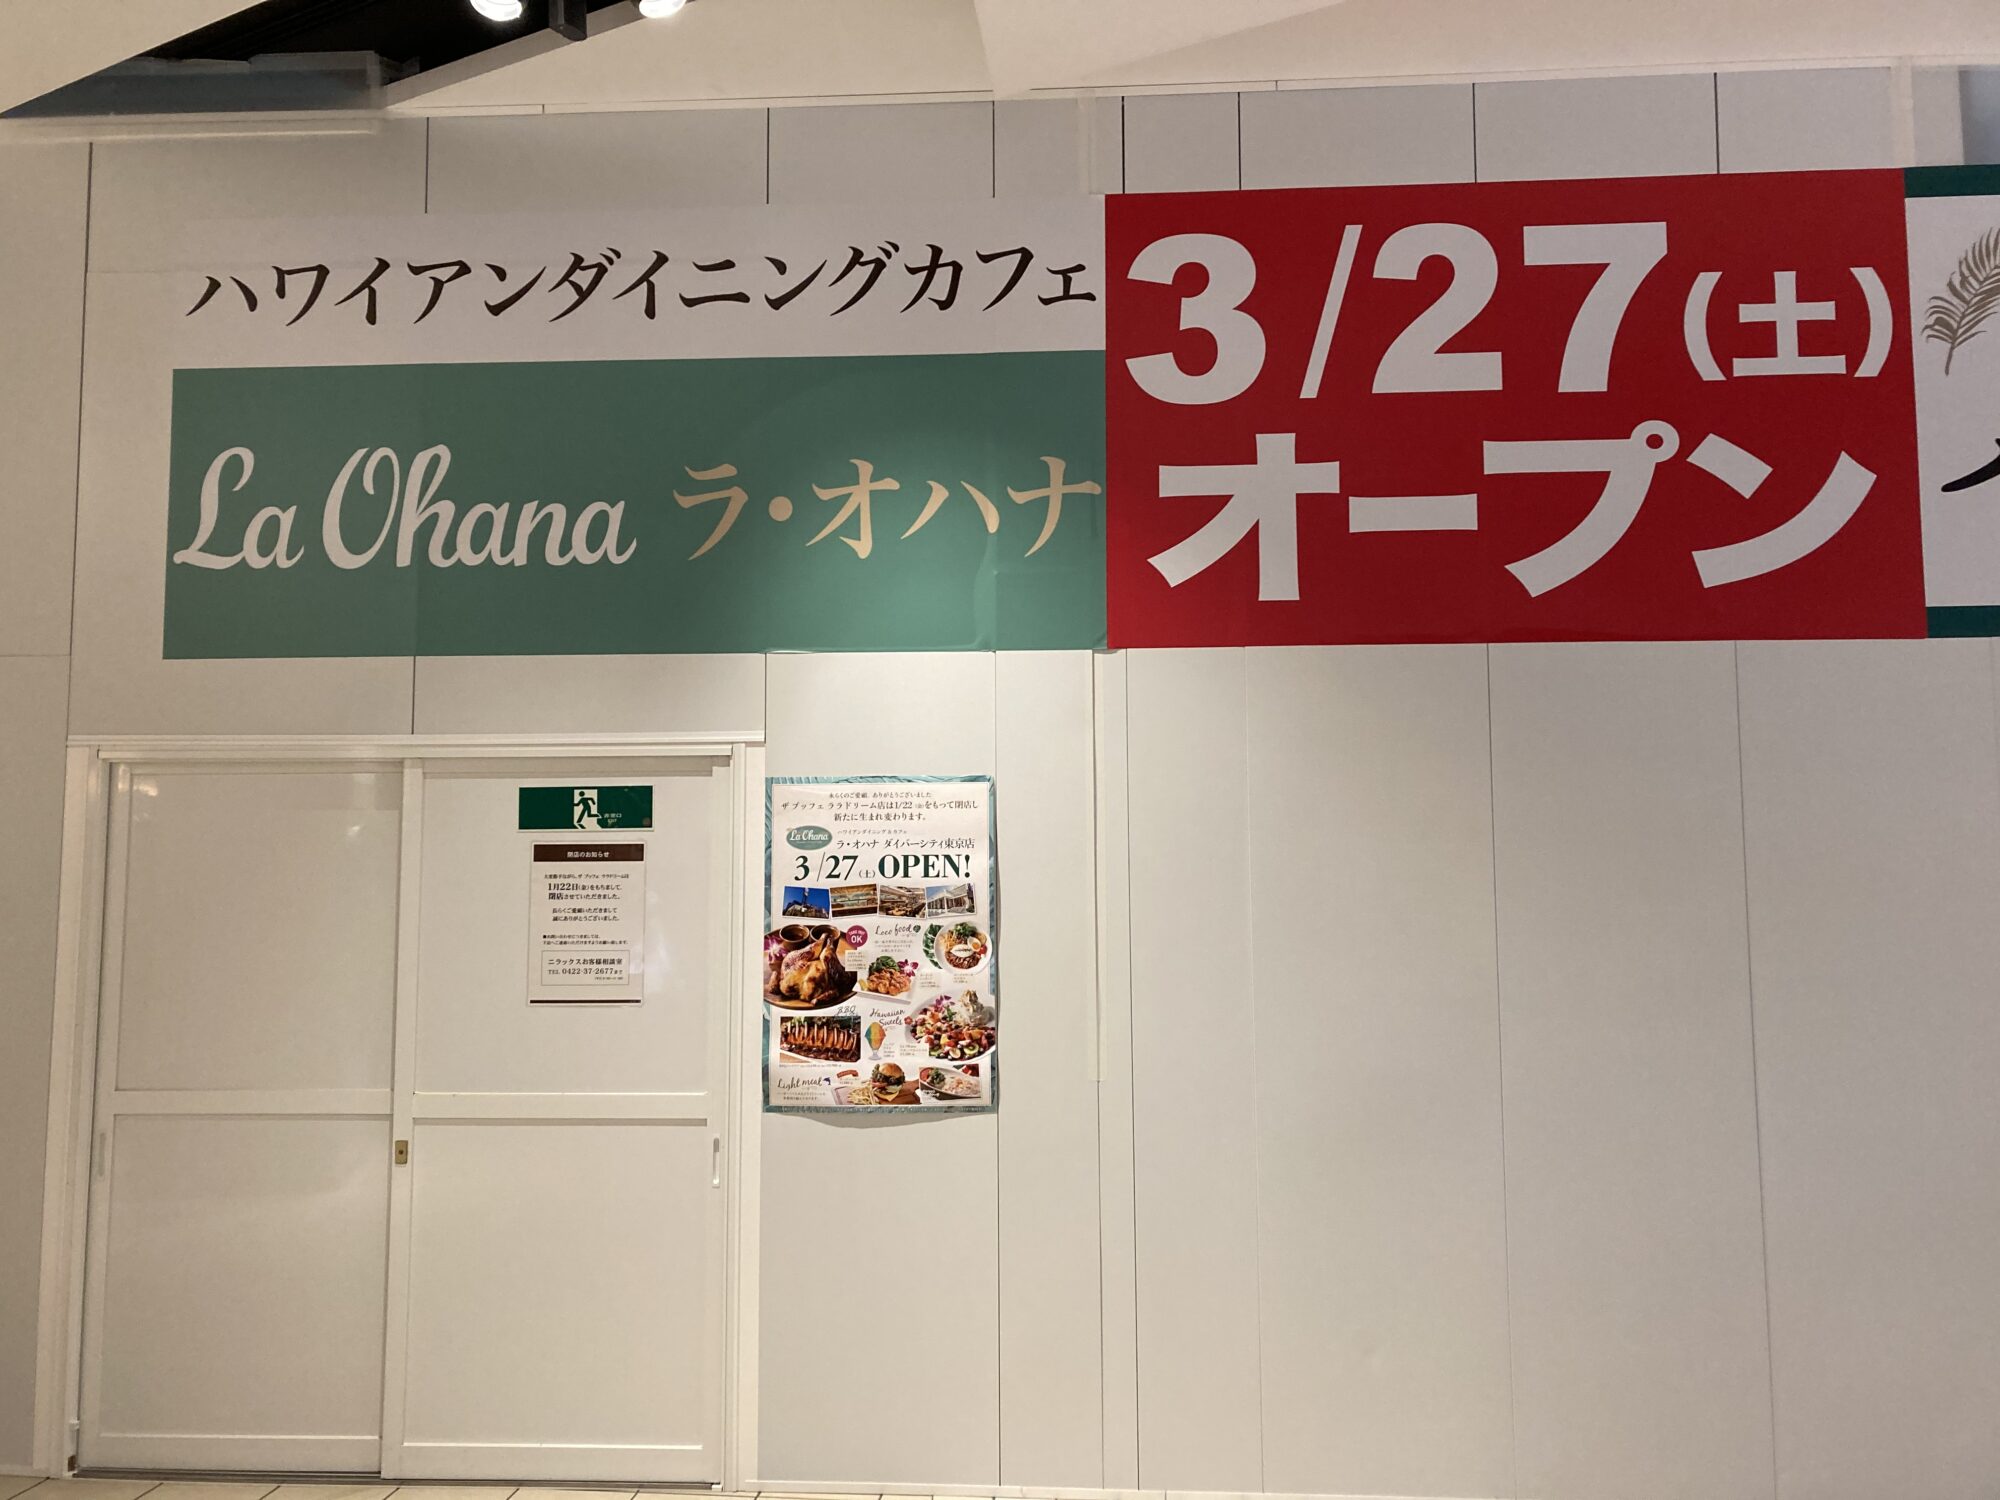 ダイバーシティ東京プラザ 3 27 土 新規開店 ハワイアンダイニング カフェ ラ オハナ 湾岸ナビ